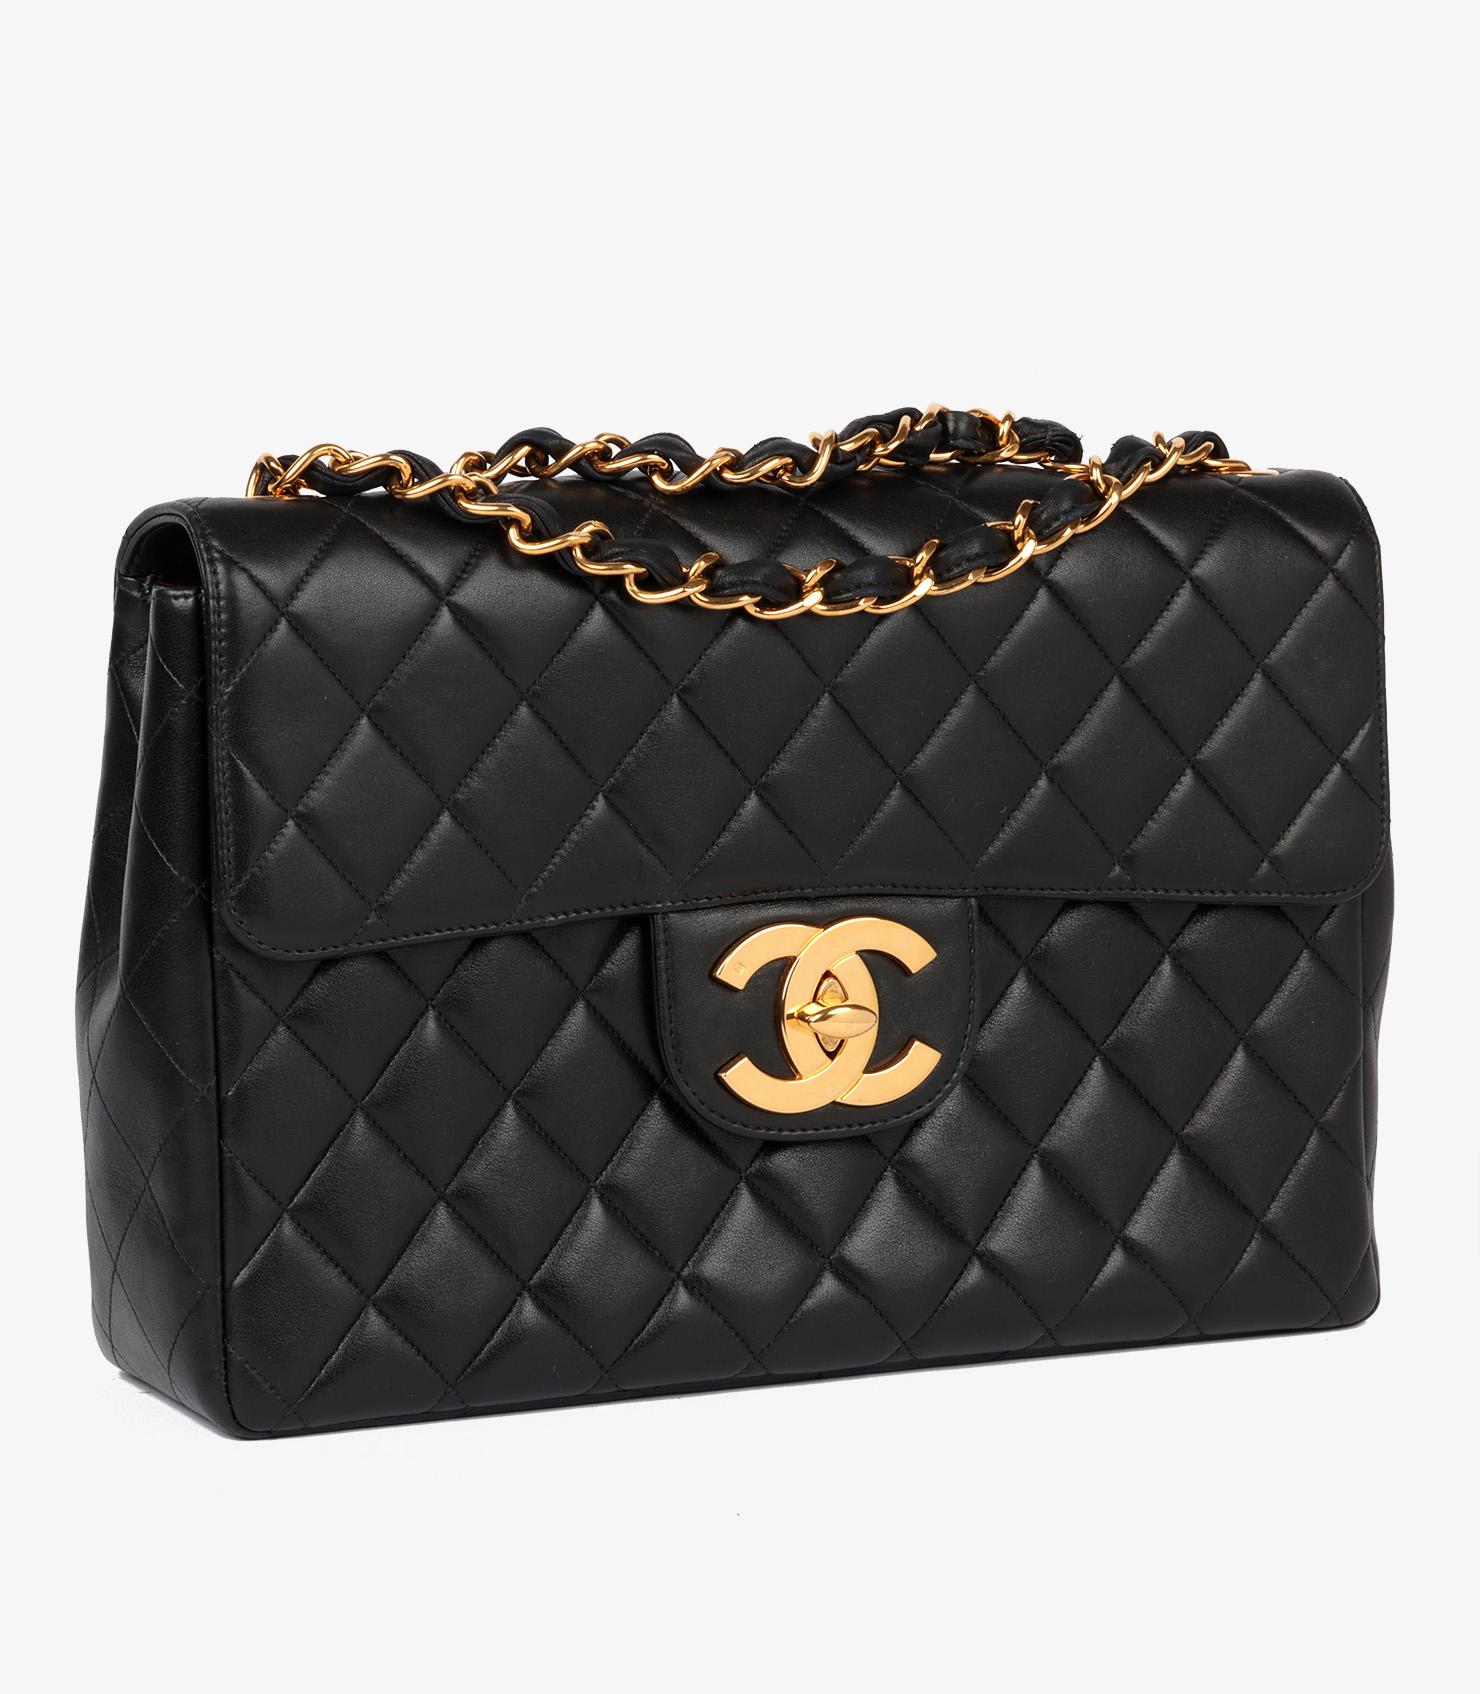 Marque : Chanel
Modèle : Jumbo XL Classic Single Flap Bag
Type de produit : Croisé, Epaule
Numéro de série : 48*****
Age : Circa 1996
Accompagné de : Livret d'entretien, Carte d'authenticité
Couleur : Noir
Matériel : Or (plaqué 24k)
Matériau(x) :